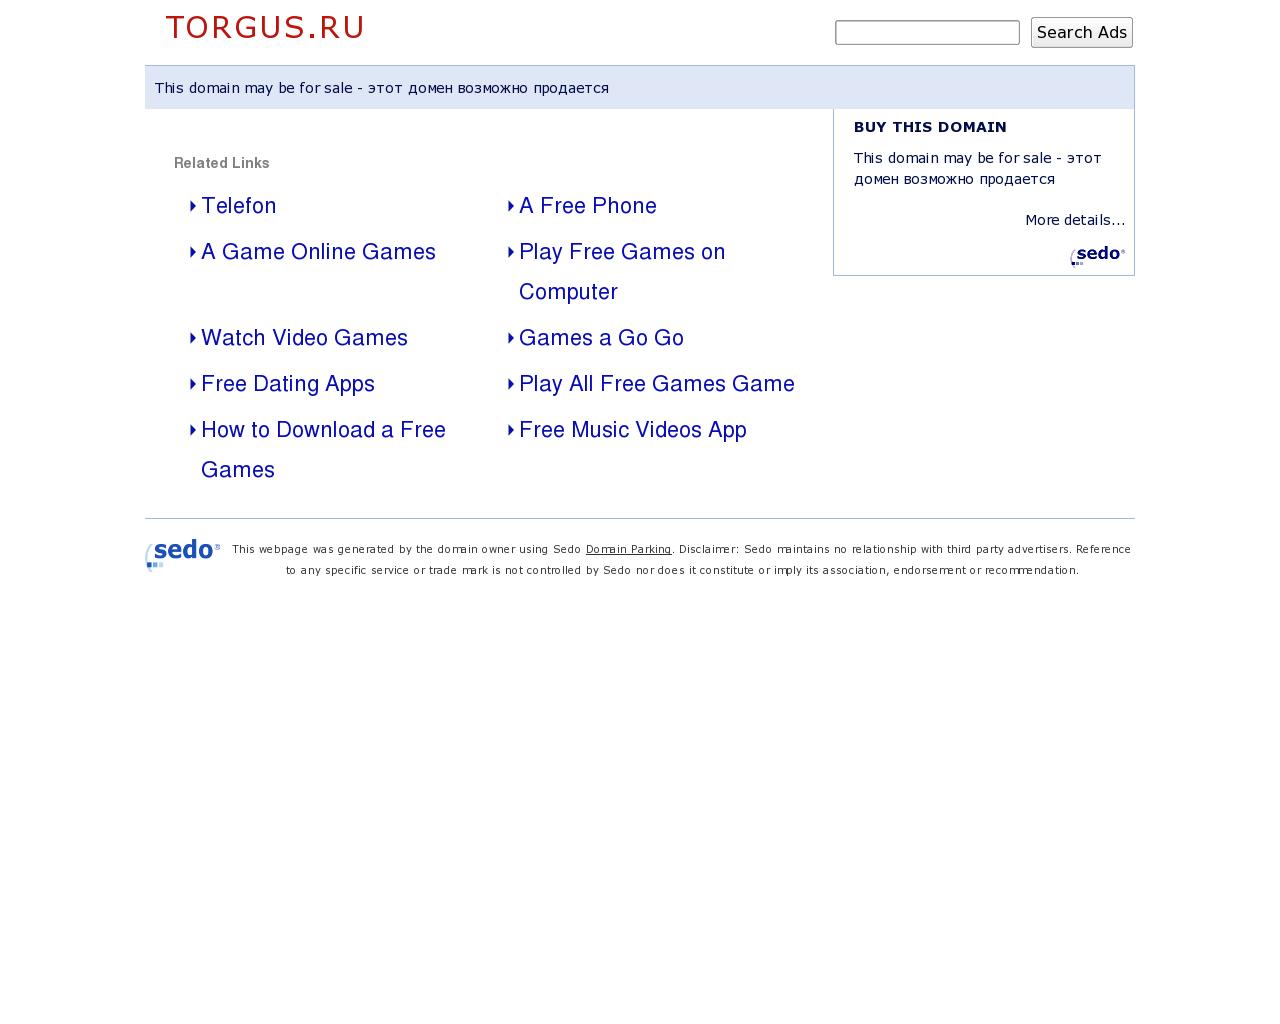 Изображение сайта torgus.ru в разрешении 1280x1024